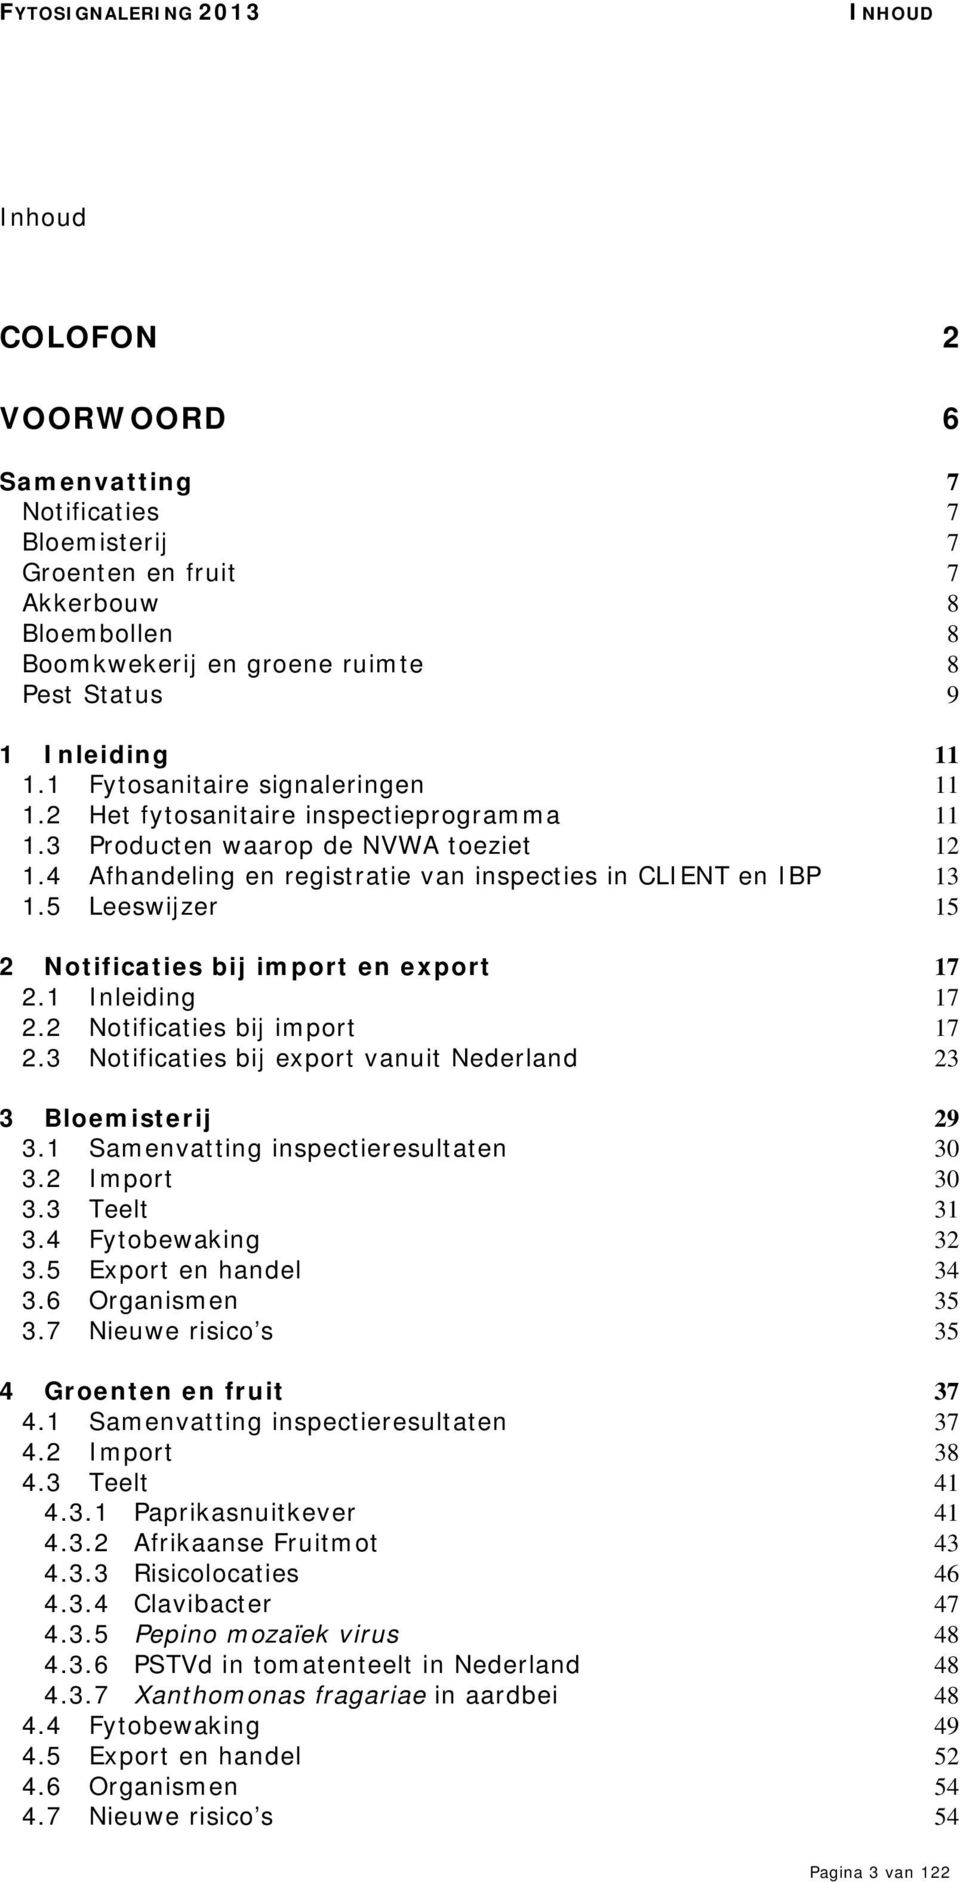 5 Leeswijzer 15 2 Notificaties bij import en export 17 2.1 Inleiding 17 2.2 Notificaties bij import 17 2.3 Notificaties bij export vanuit Nederland 23 3 Bloemisterij 29 3.